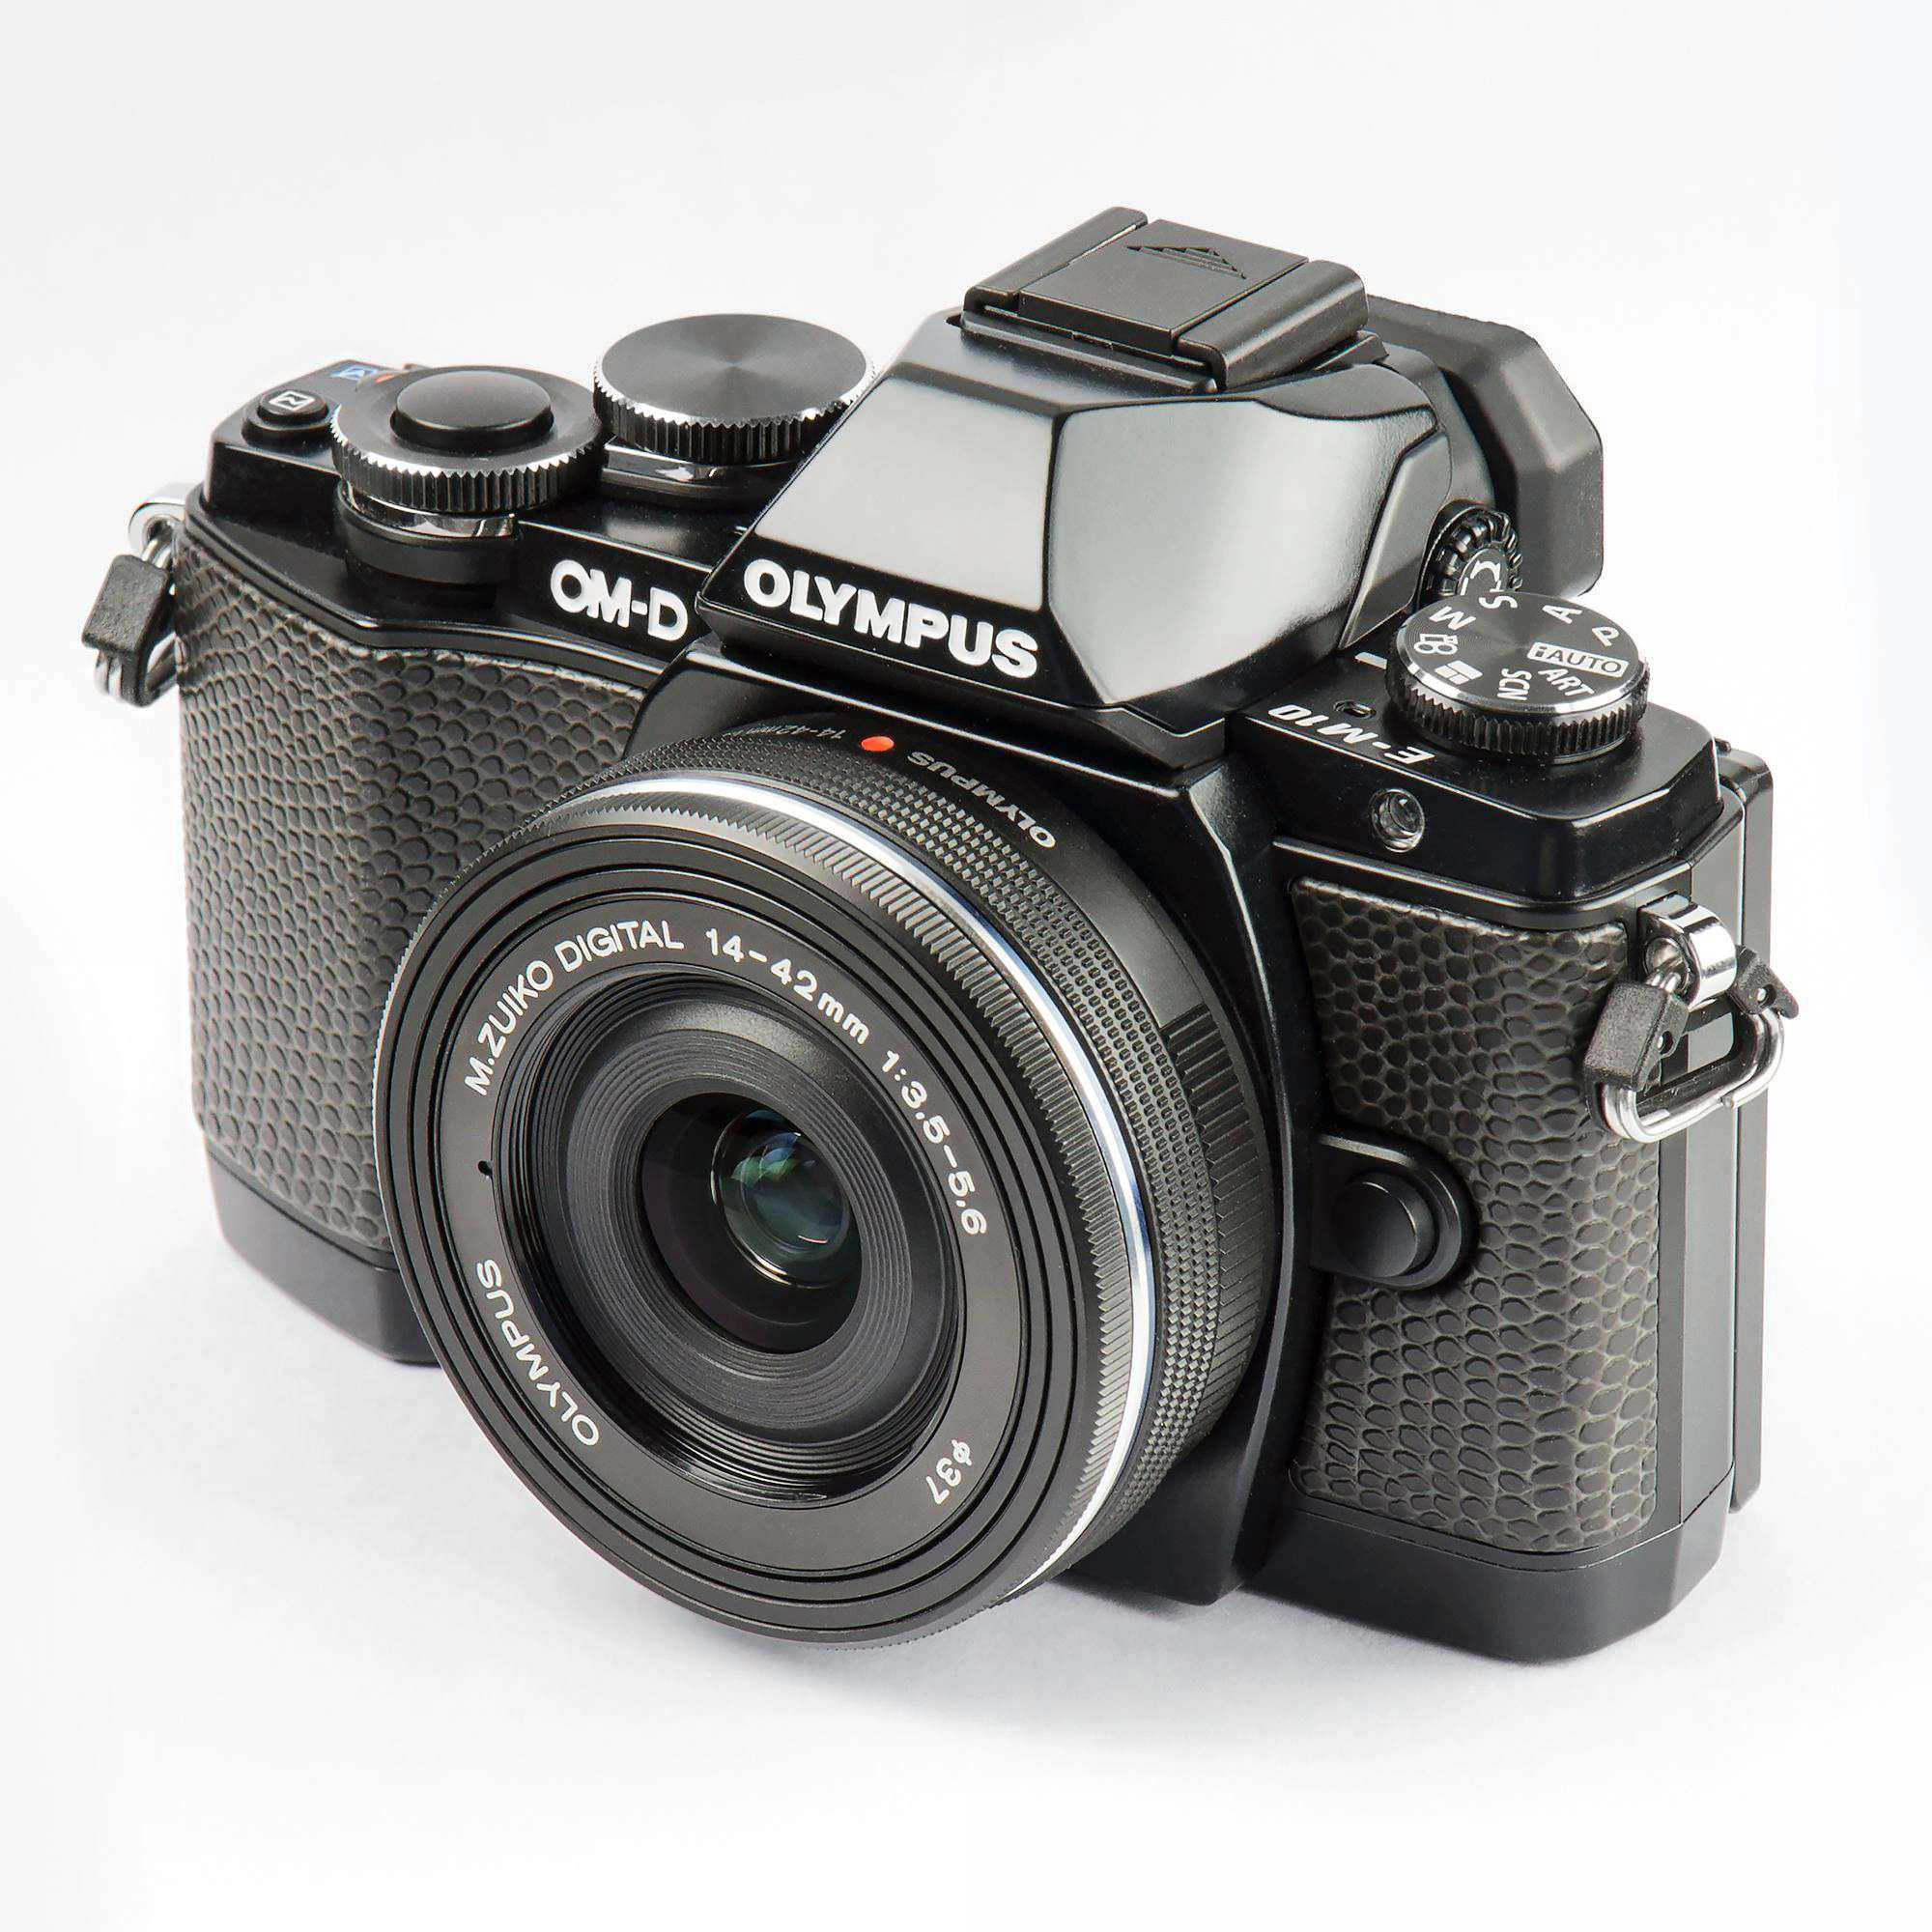 Обзор olympus om-d e-m10: тест и сравнение фотоаппарата с другими моделями